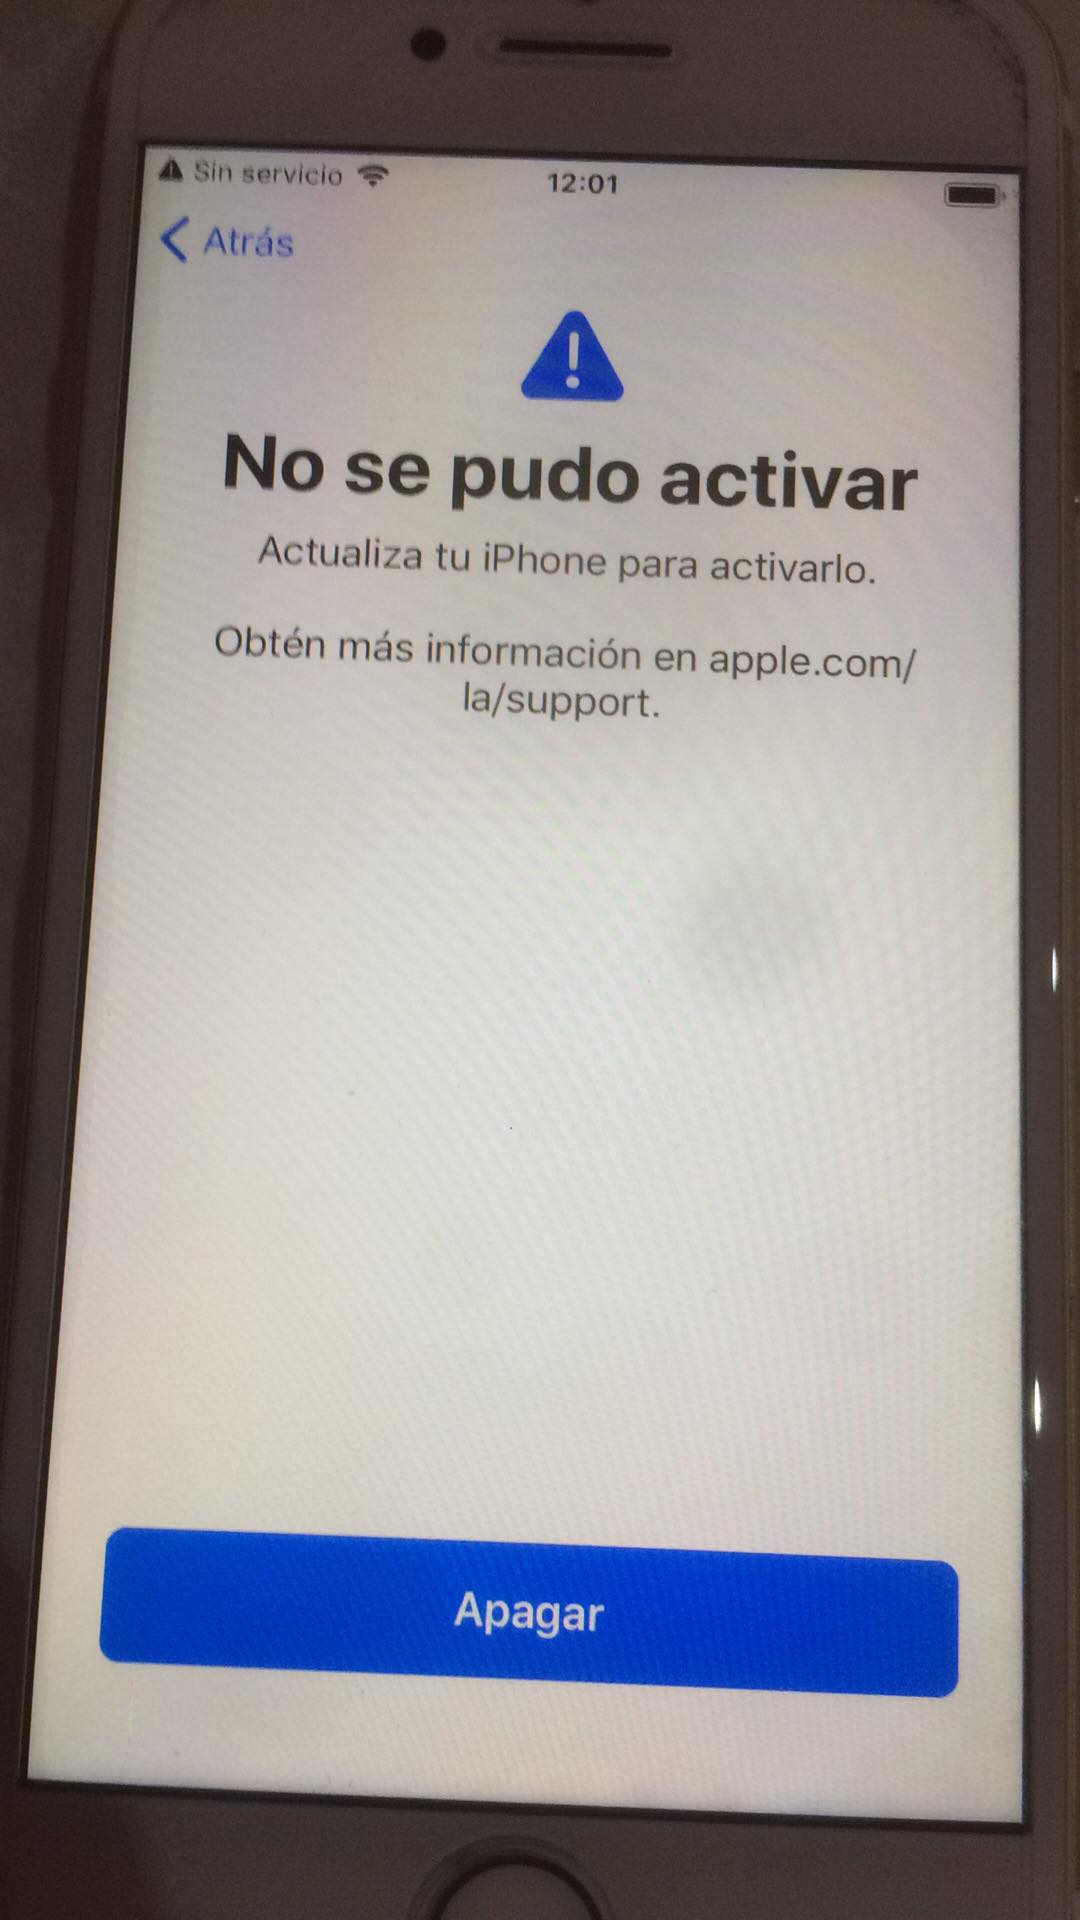 No se puede activar mi iphone - Comunidad de Apple - Porque Mi Iphone 6 No Tiene Servicio